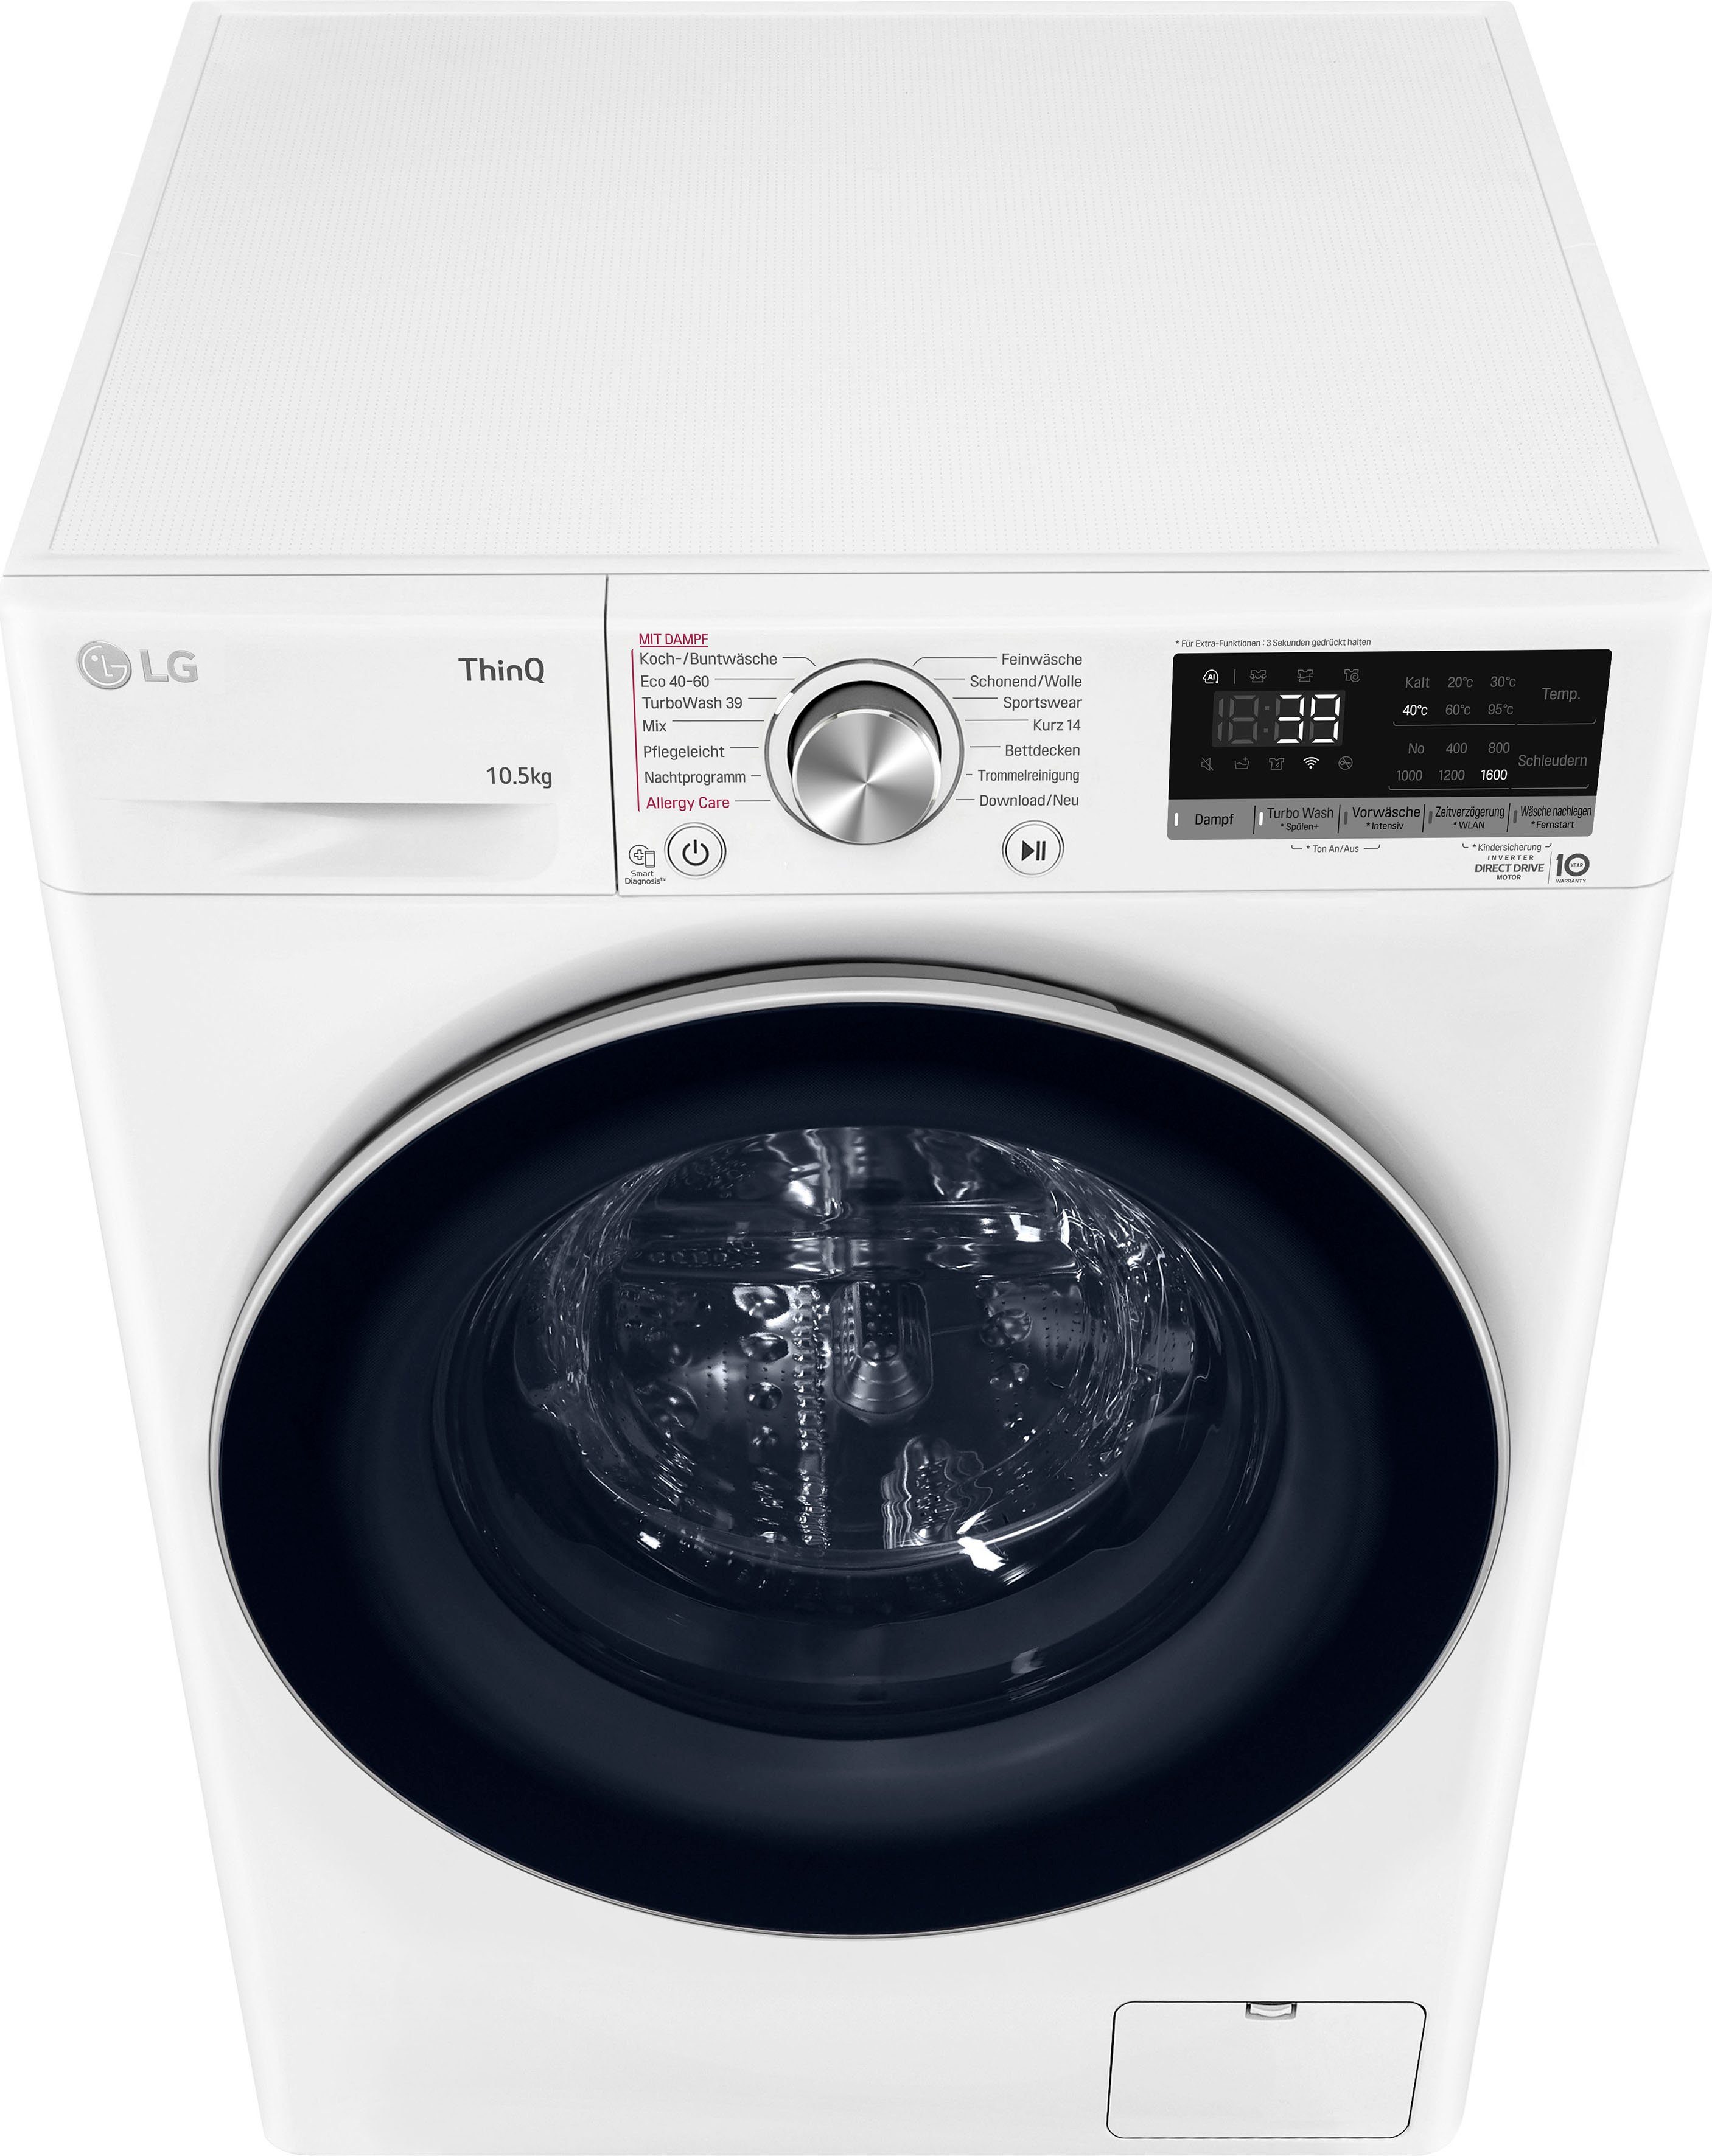 LG Waschmaschine F6WV710P1, 10,5 U/min, 39 in nur kg, - Waschen TurboWash® 1600 Minuten